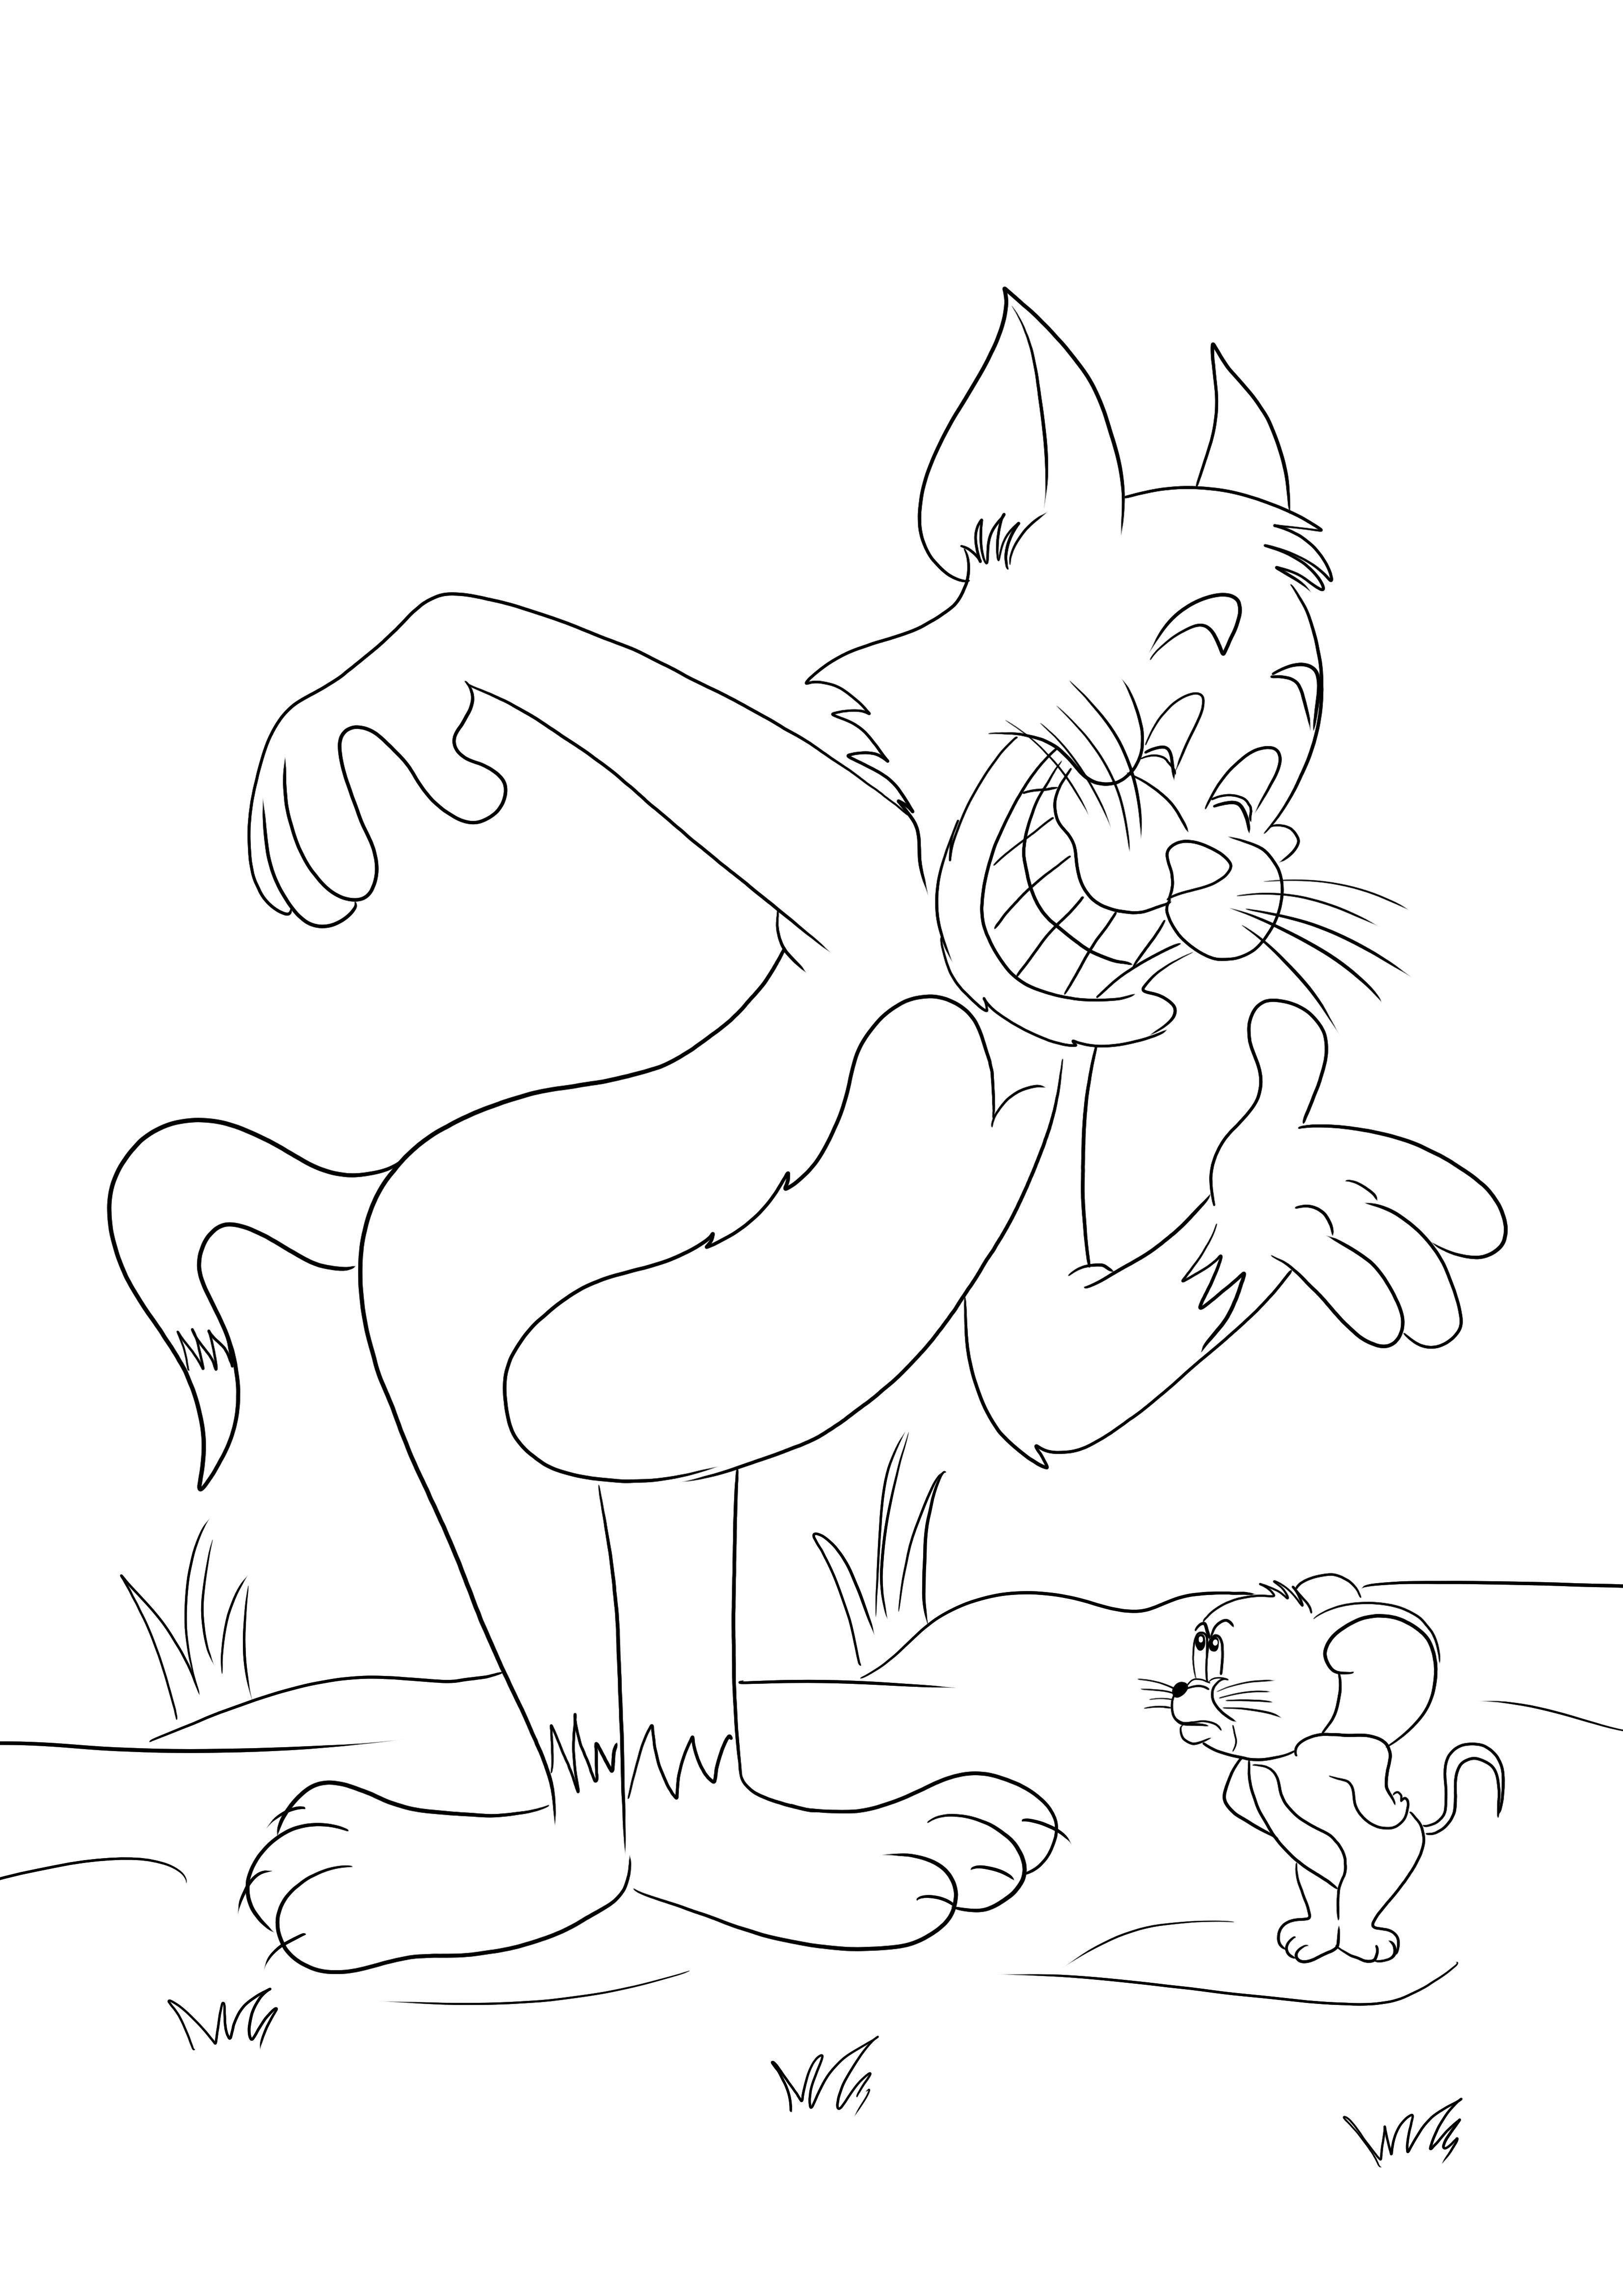 Stampabile gratuitamente di Tom e Jerry che combattono di nuovo per colorare facilmente per i bambini